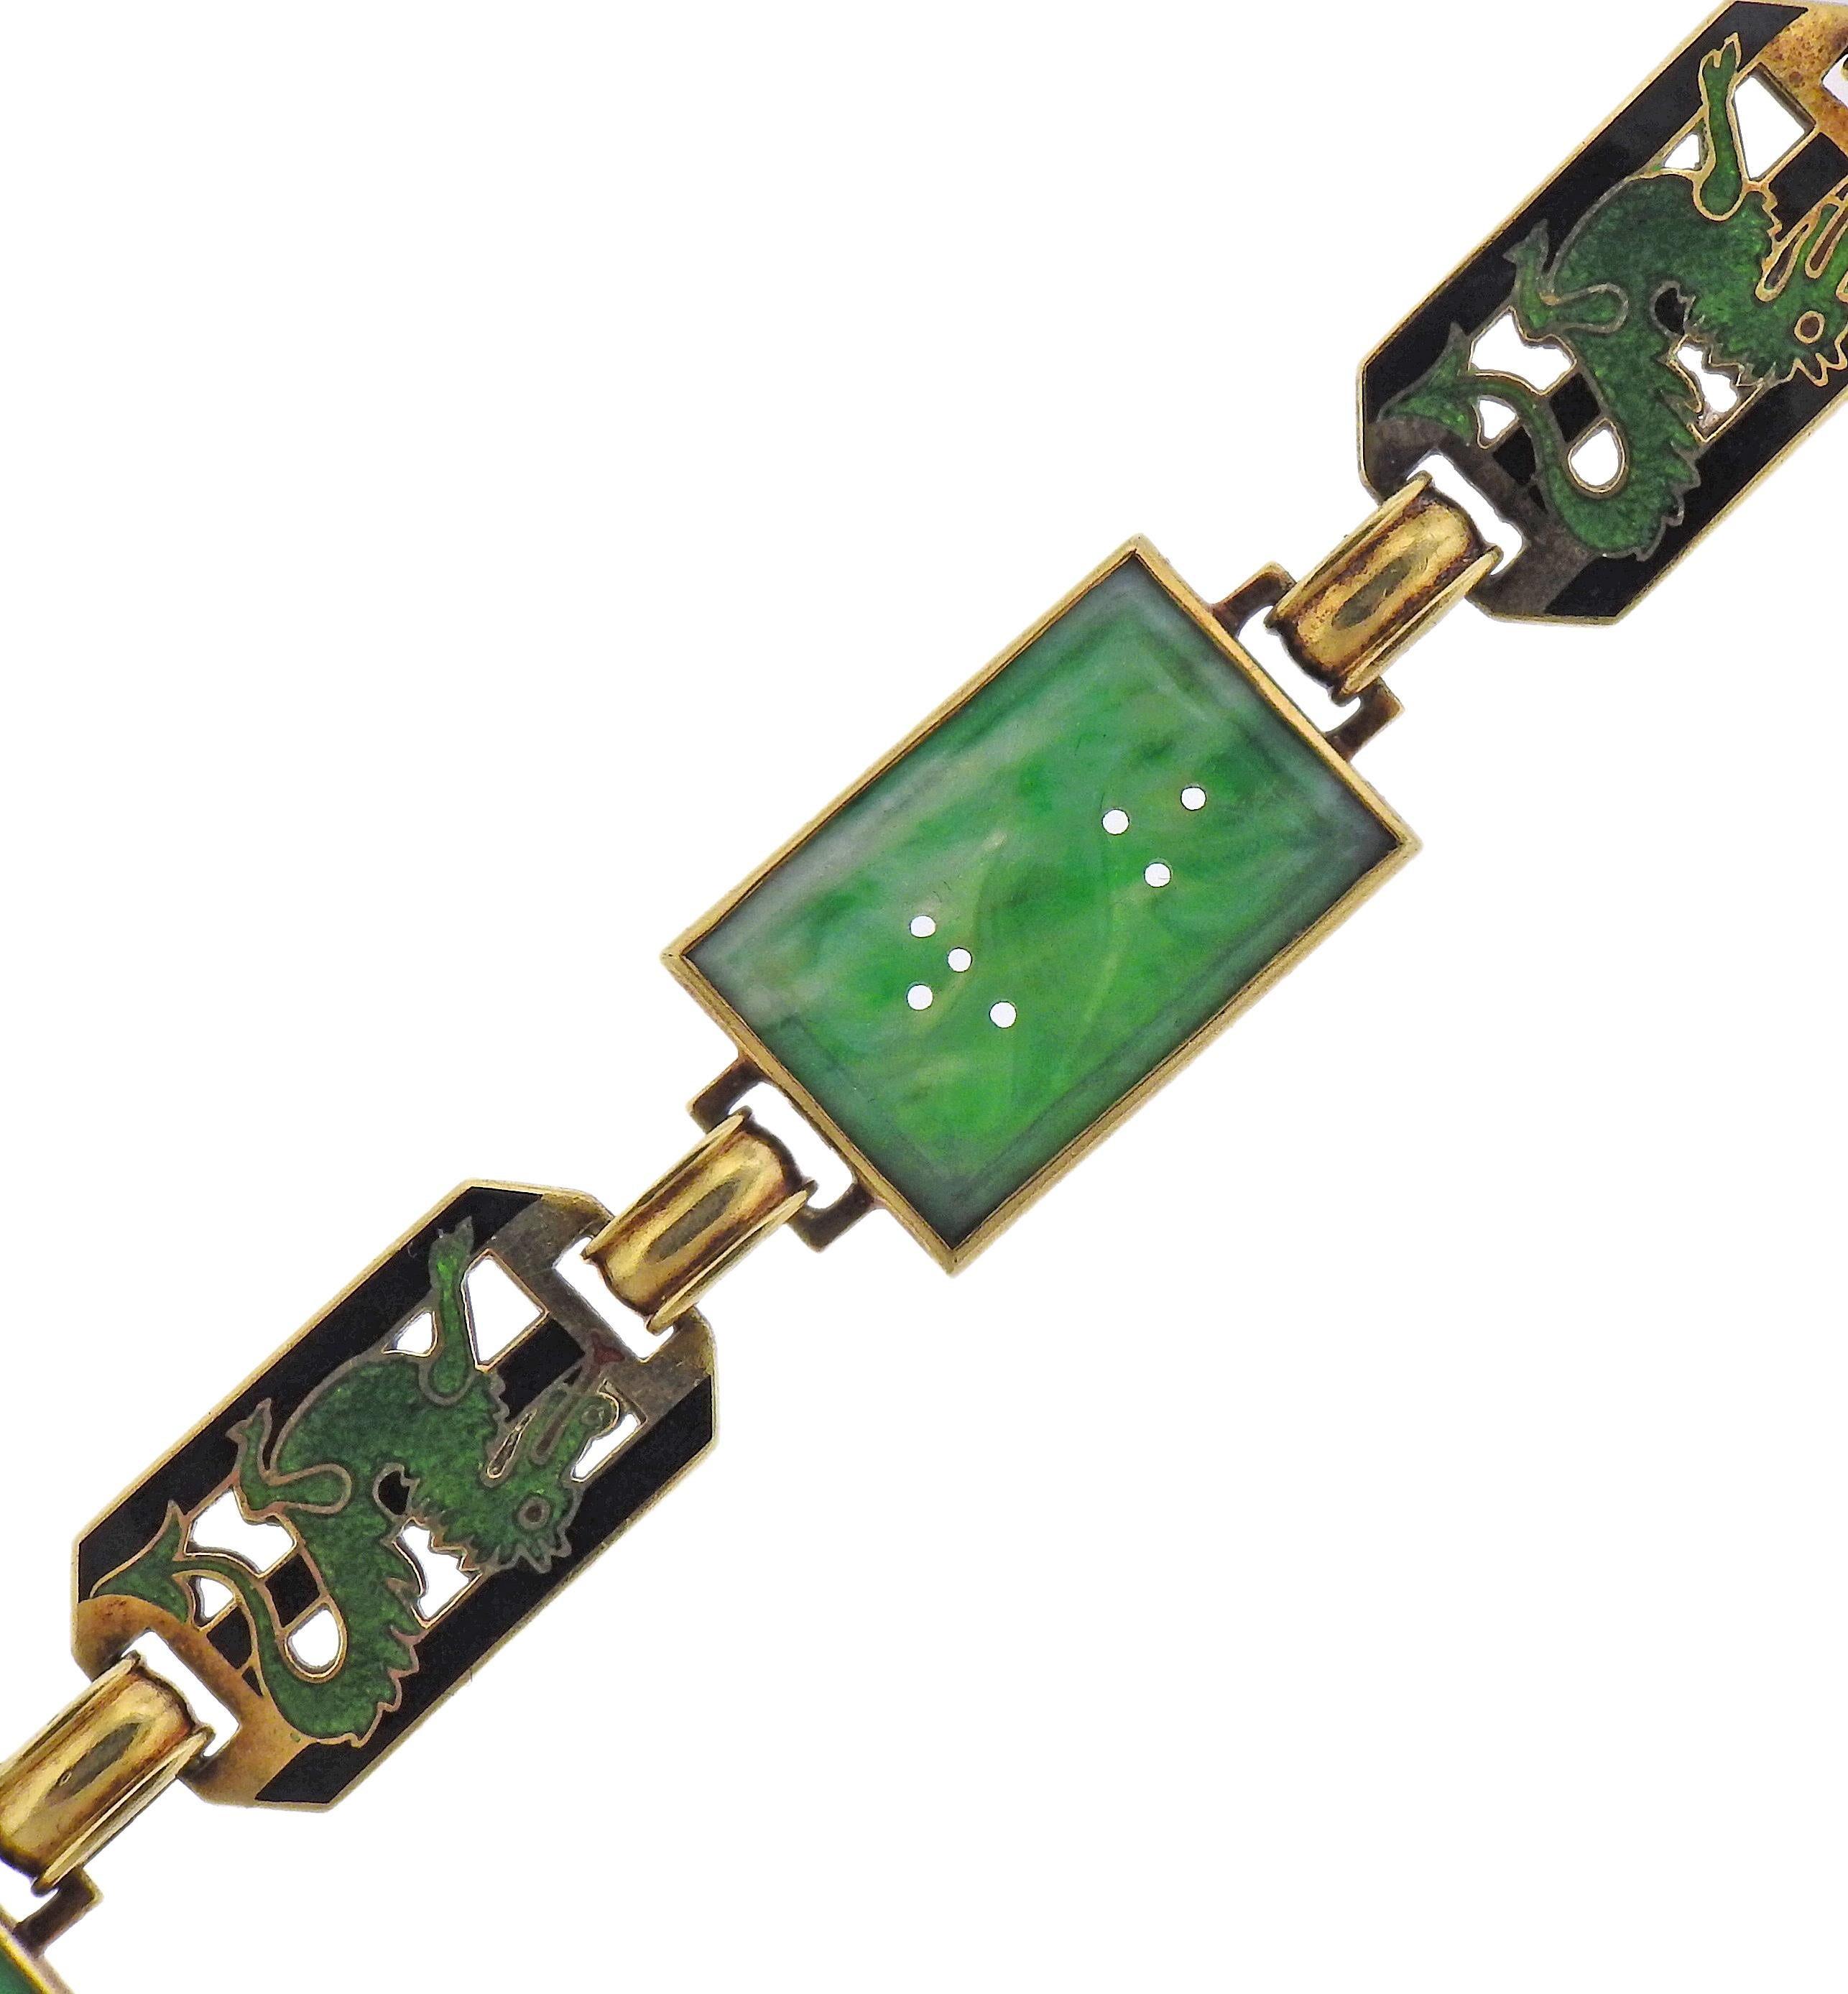 Armband aus 14-karätigem Gold, mit drei geschnitzten Jadeelementen und emaillierten Drachengliedern. Das Armband ist 7,5